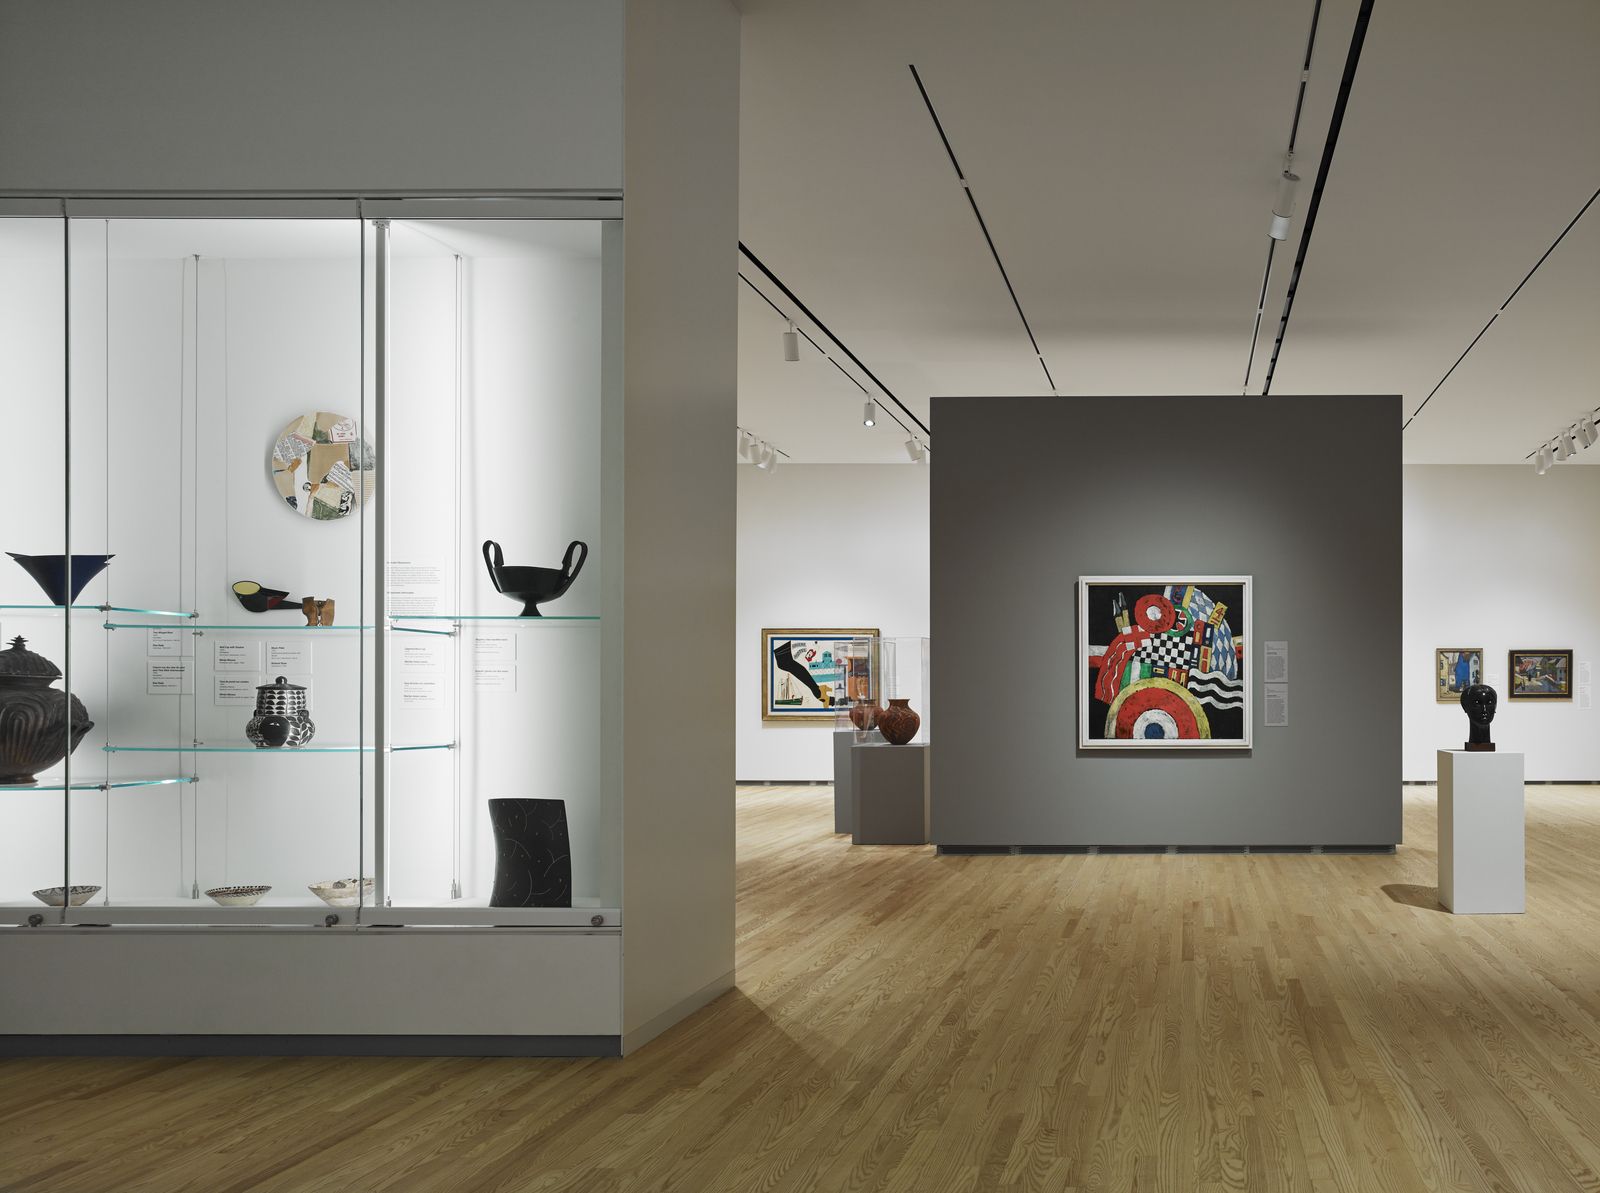 图片[8]|爱荷华大学-斯坦利艺术博物馆|ART-Arrakis | 建筑室内设计的创新与灵感